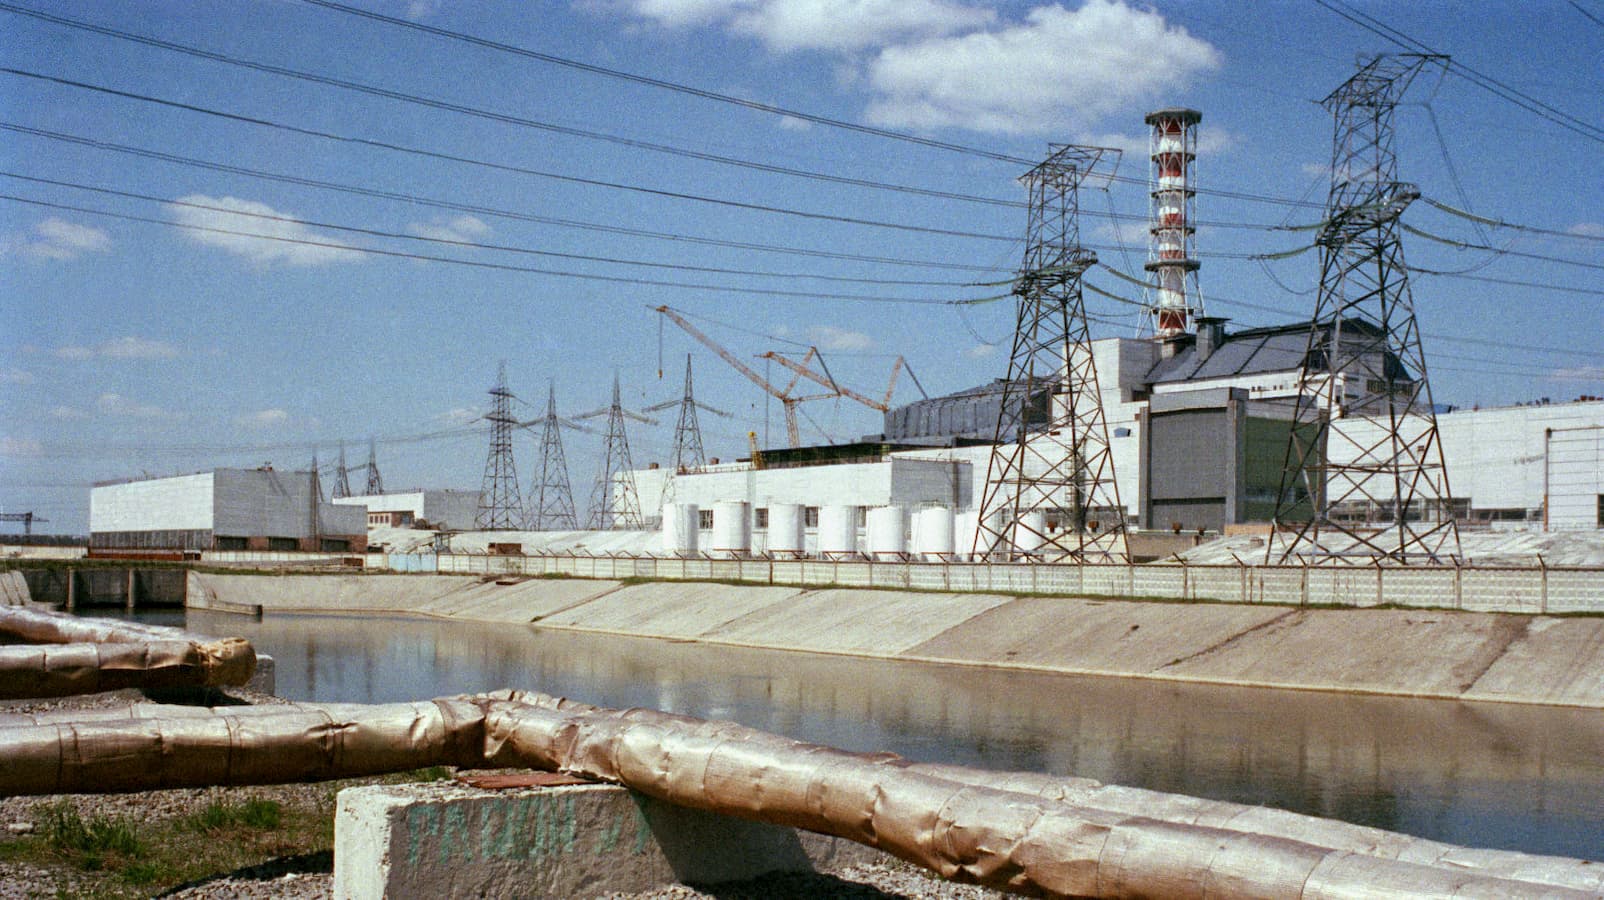 O reator nº 4 arruinado da usina nuclear de Chernobyl em 1987, cerca de 14 meses após o desastre.